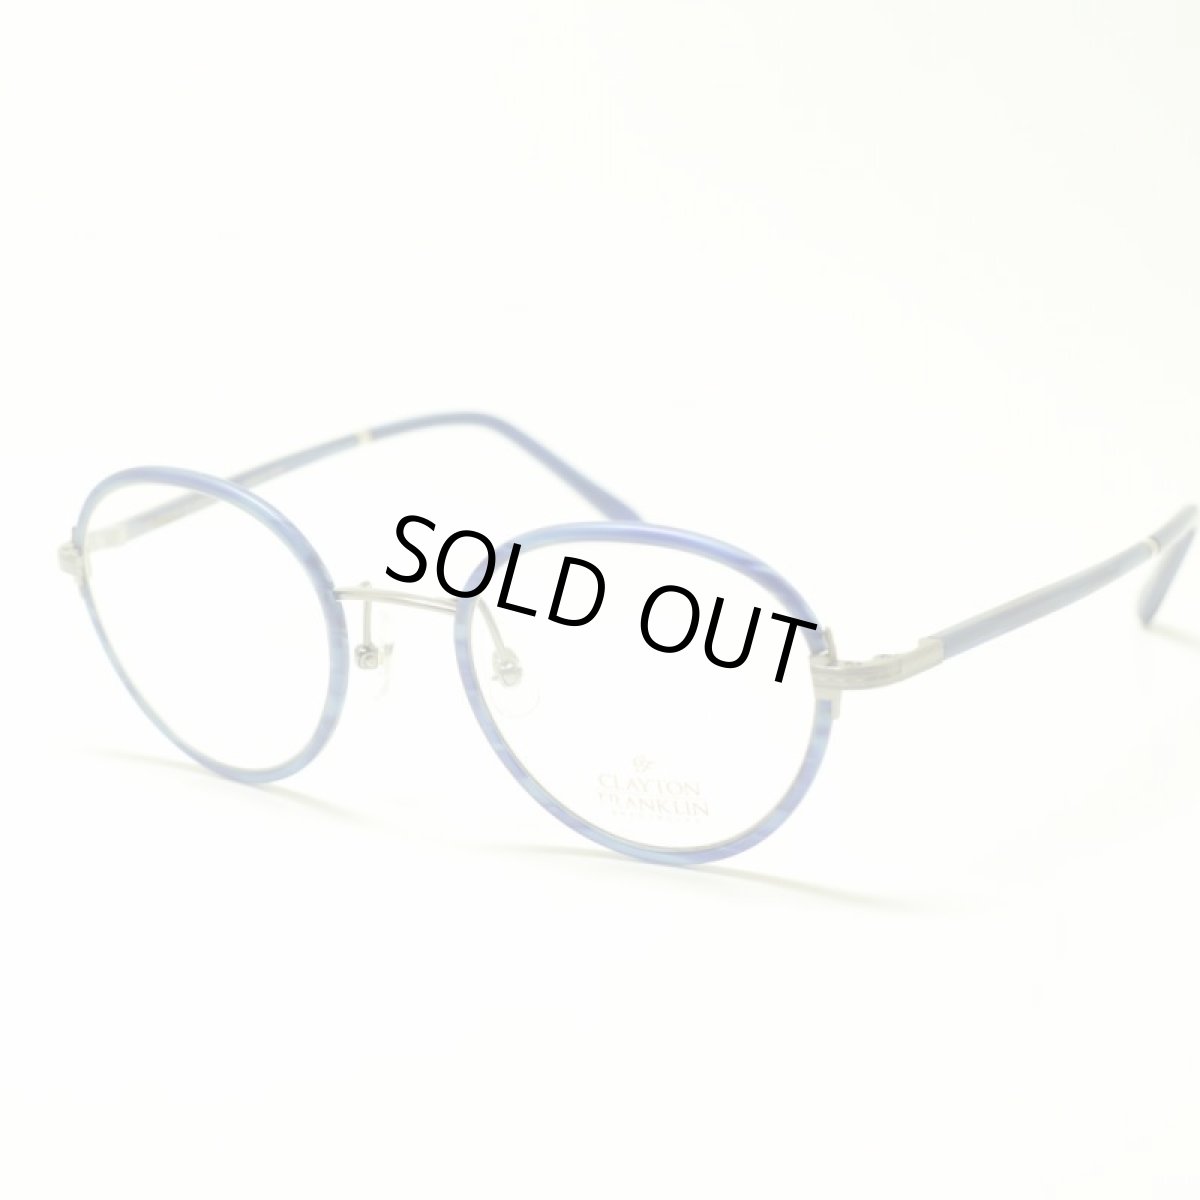 画像1: CLAYTON FRANKLIN クレイトンフランクリン 618 MBLS マットブルーササ メガネ 眼鏡 めがね メンズ レディース おしゃれ ブランド 人気 おすすめ フレーム 流行り 度付き レンズ (1)